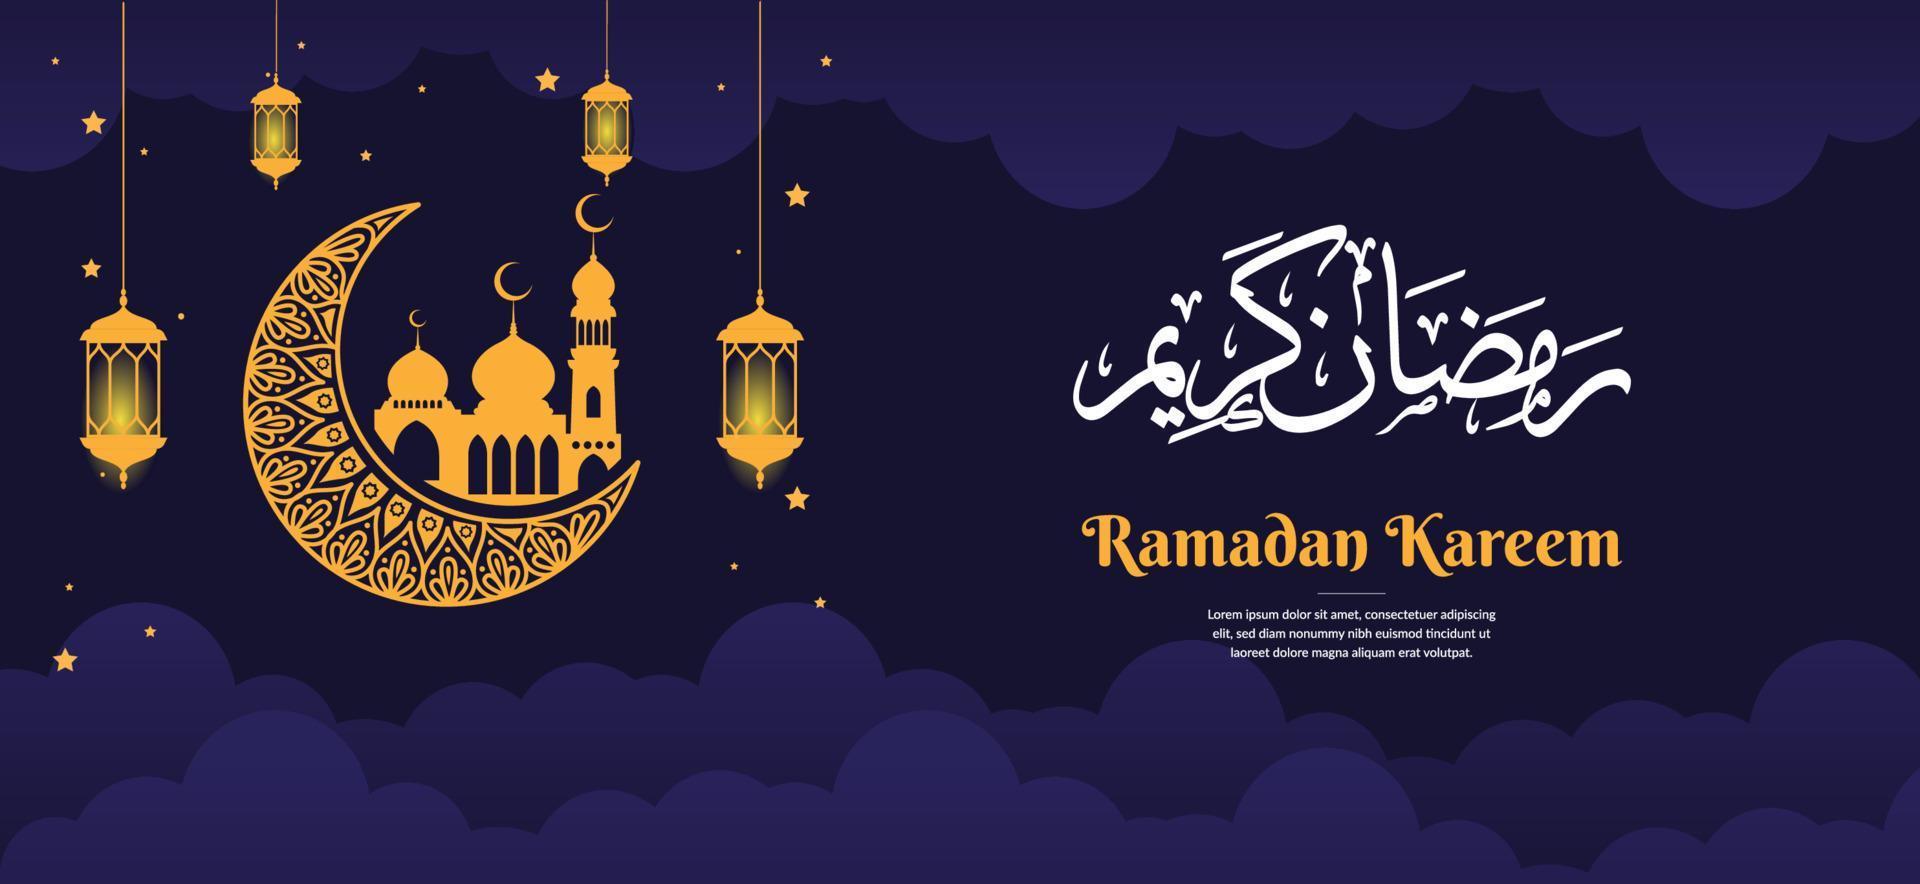 modelo de banner de saudação ramadan kareem vetor